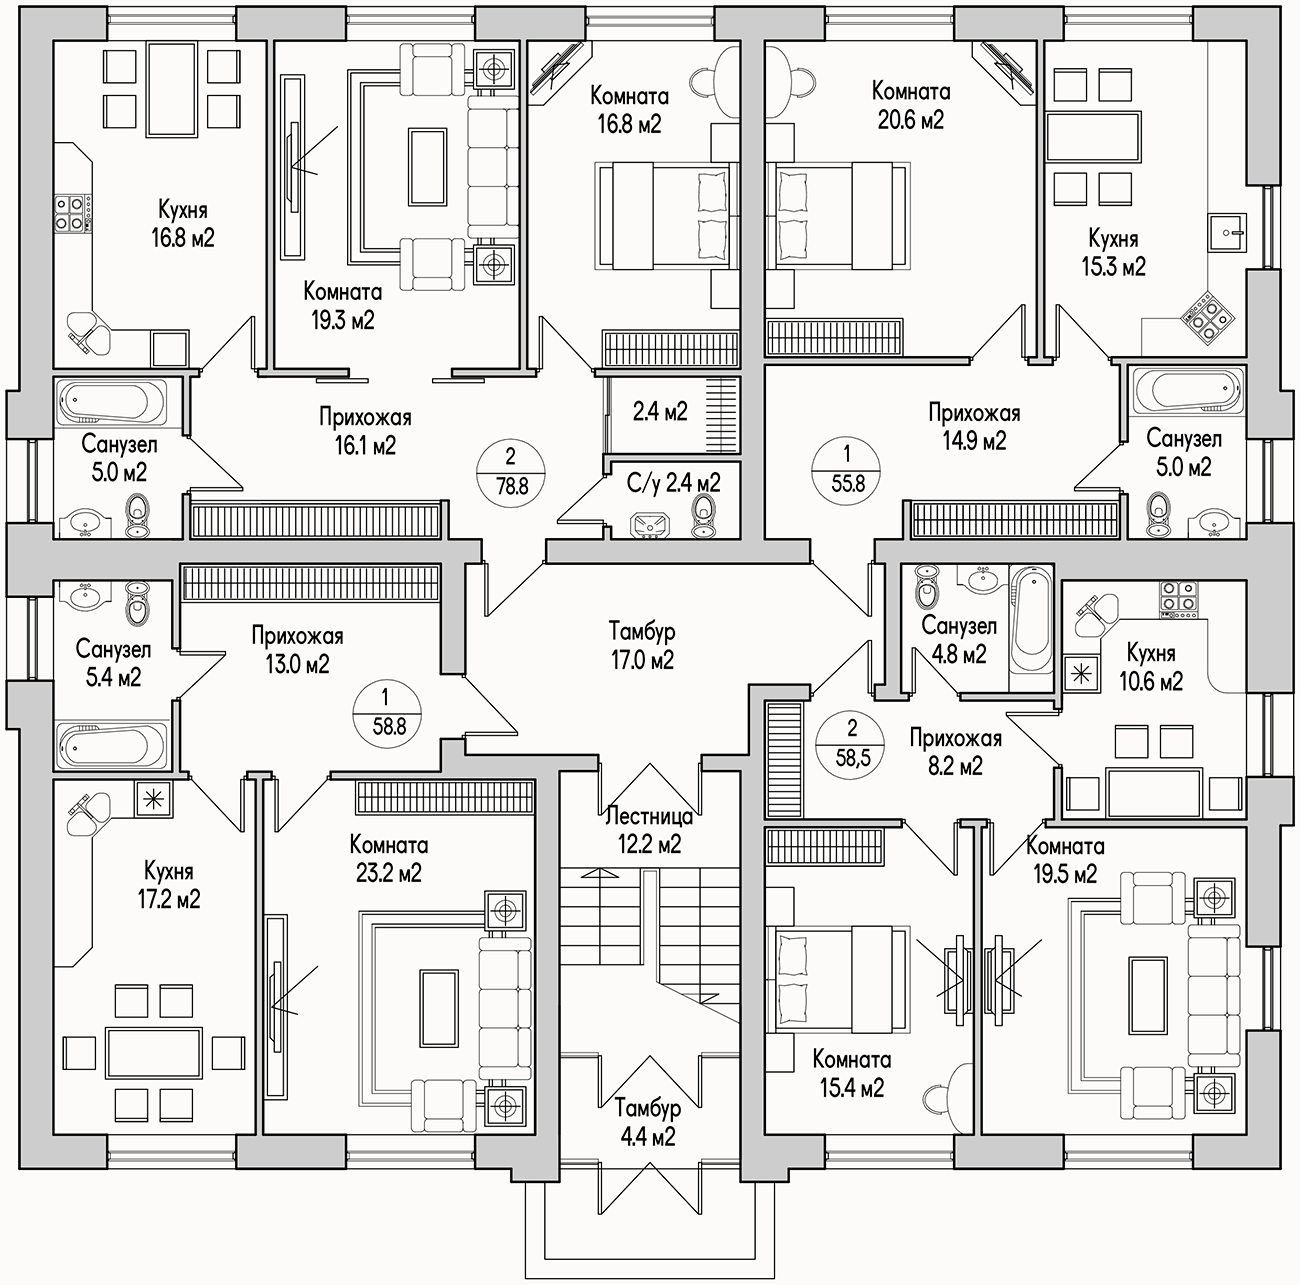 Планирока 1-го этажа в проекте Трехэтажный дом на 12 квартир MK-312